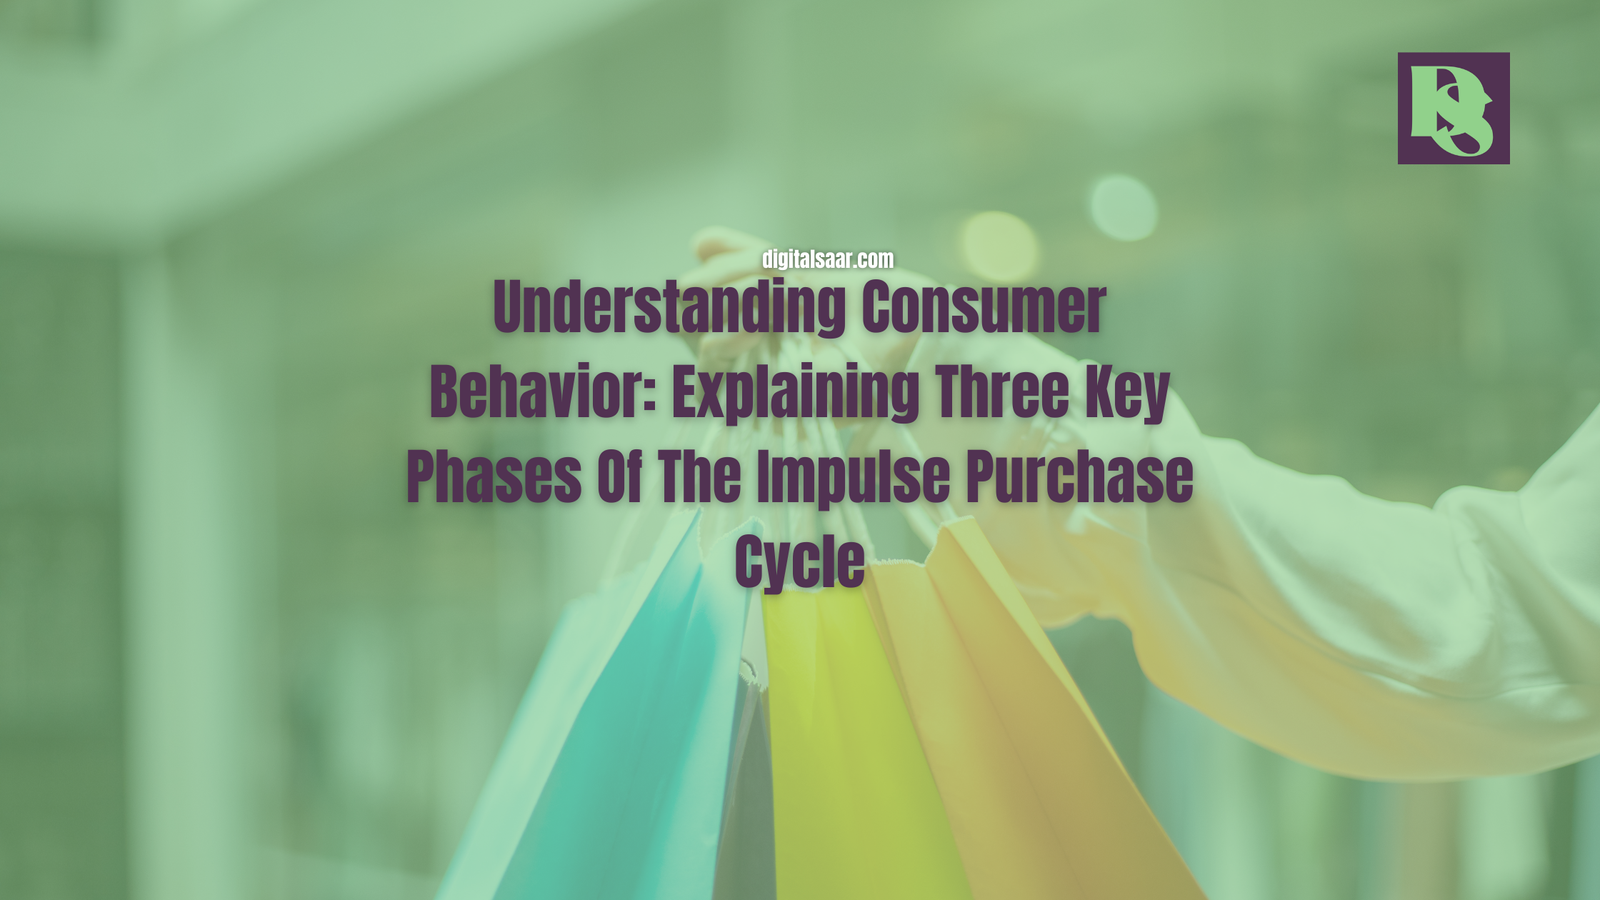 Explaining Three Key Phases Of The Impulse Purchase Cycle